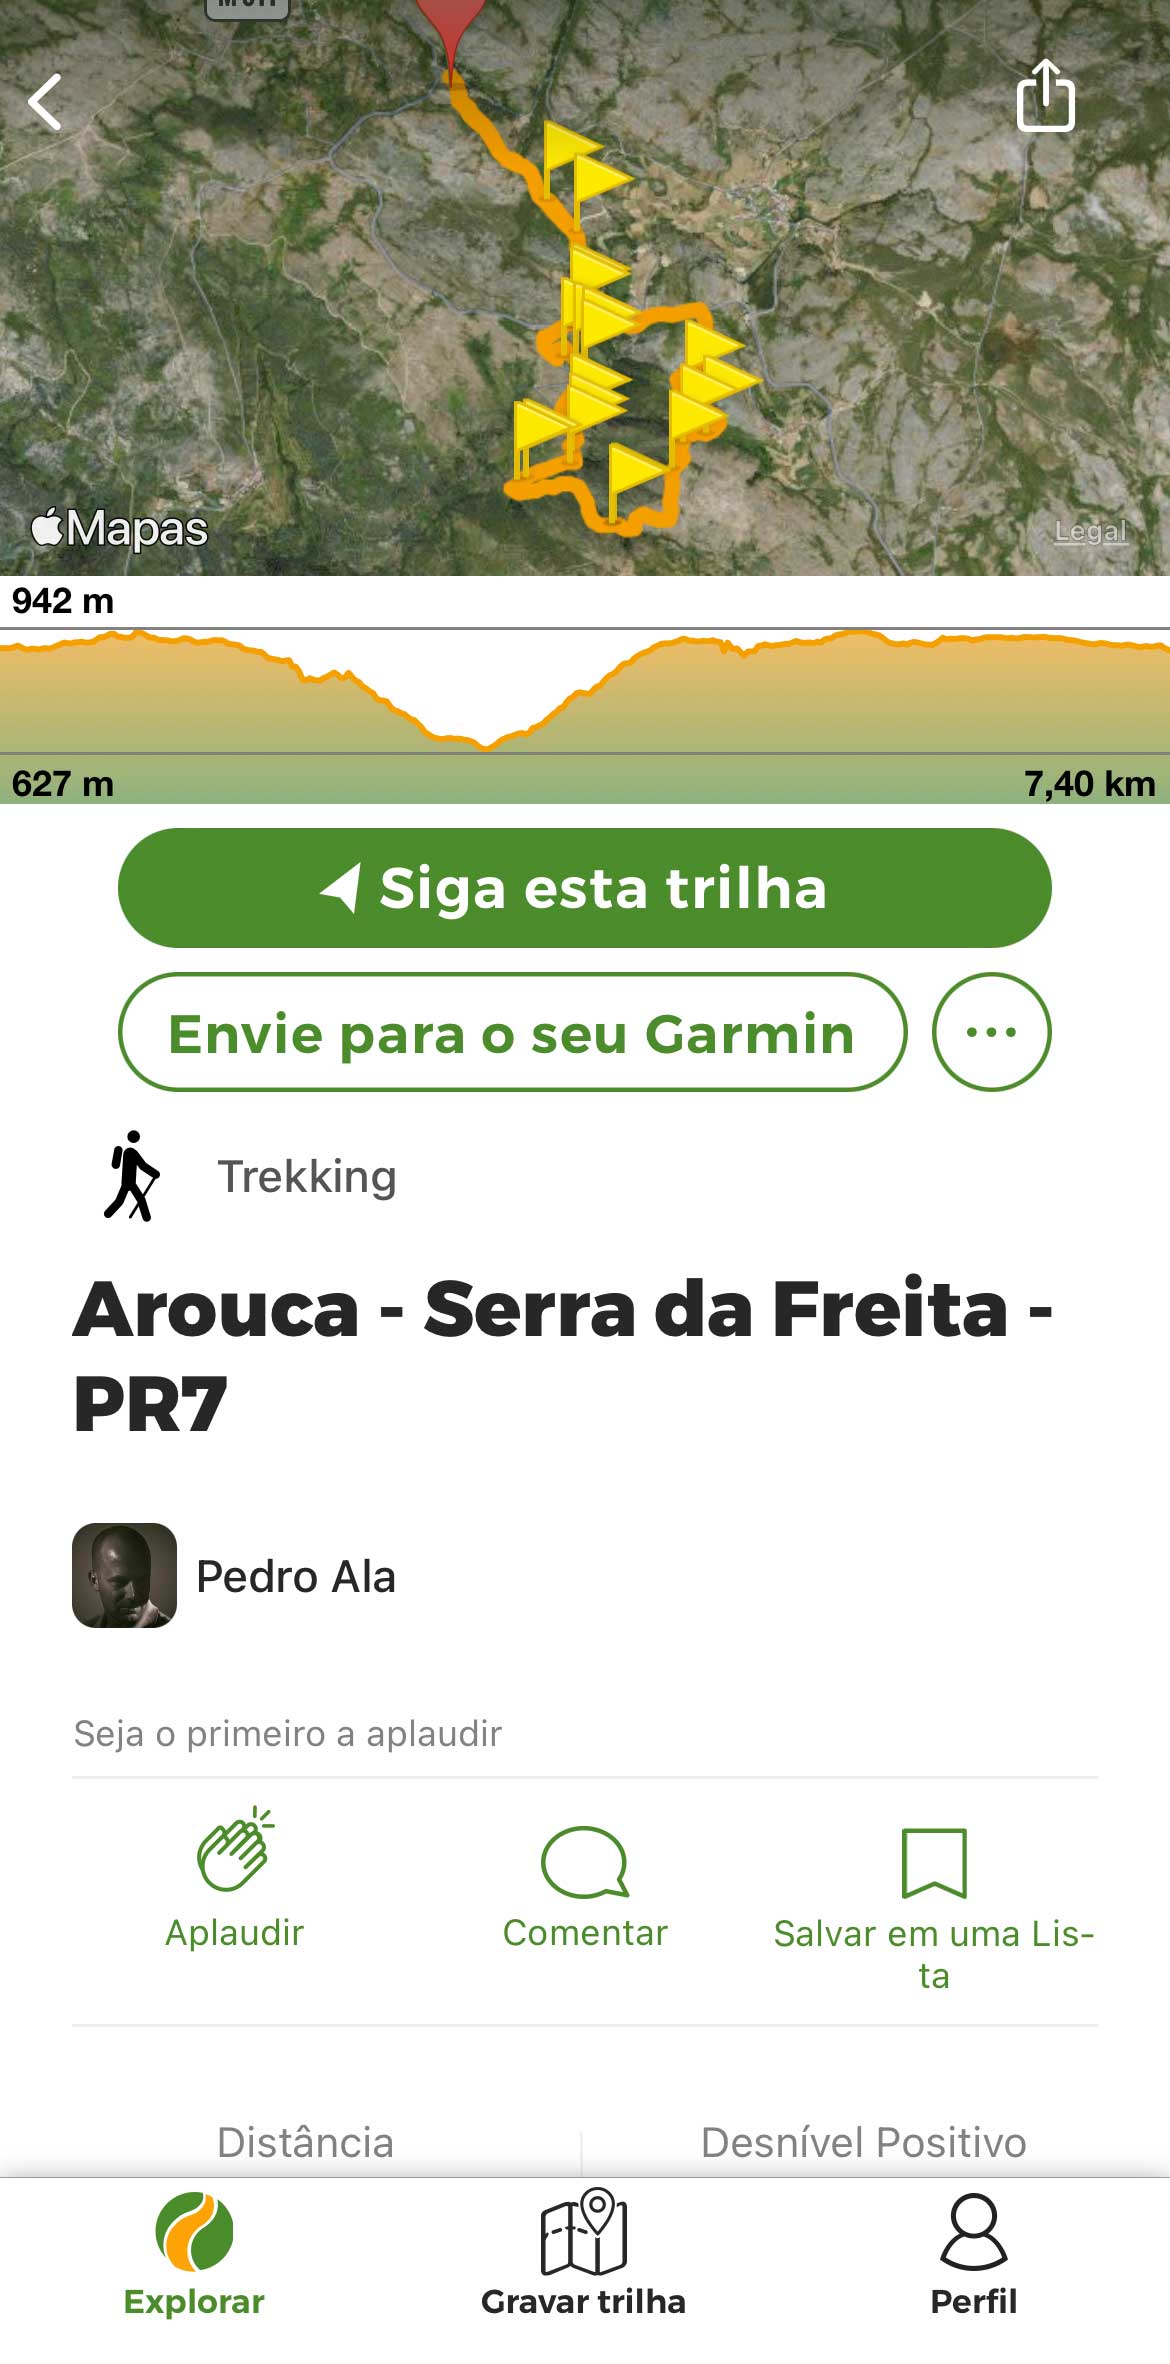 Roteiro do percurso PR7 Nas Escarpas da Mizarela, no mapa da app Wikiloc.